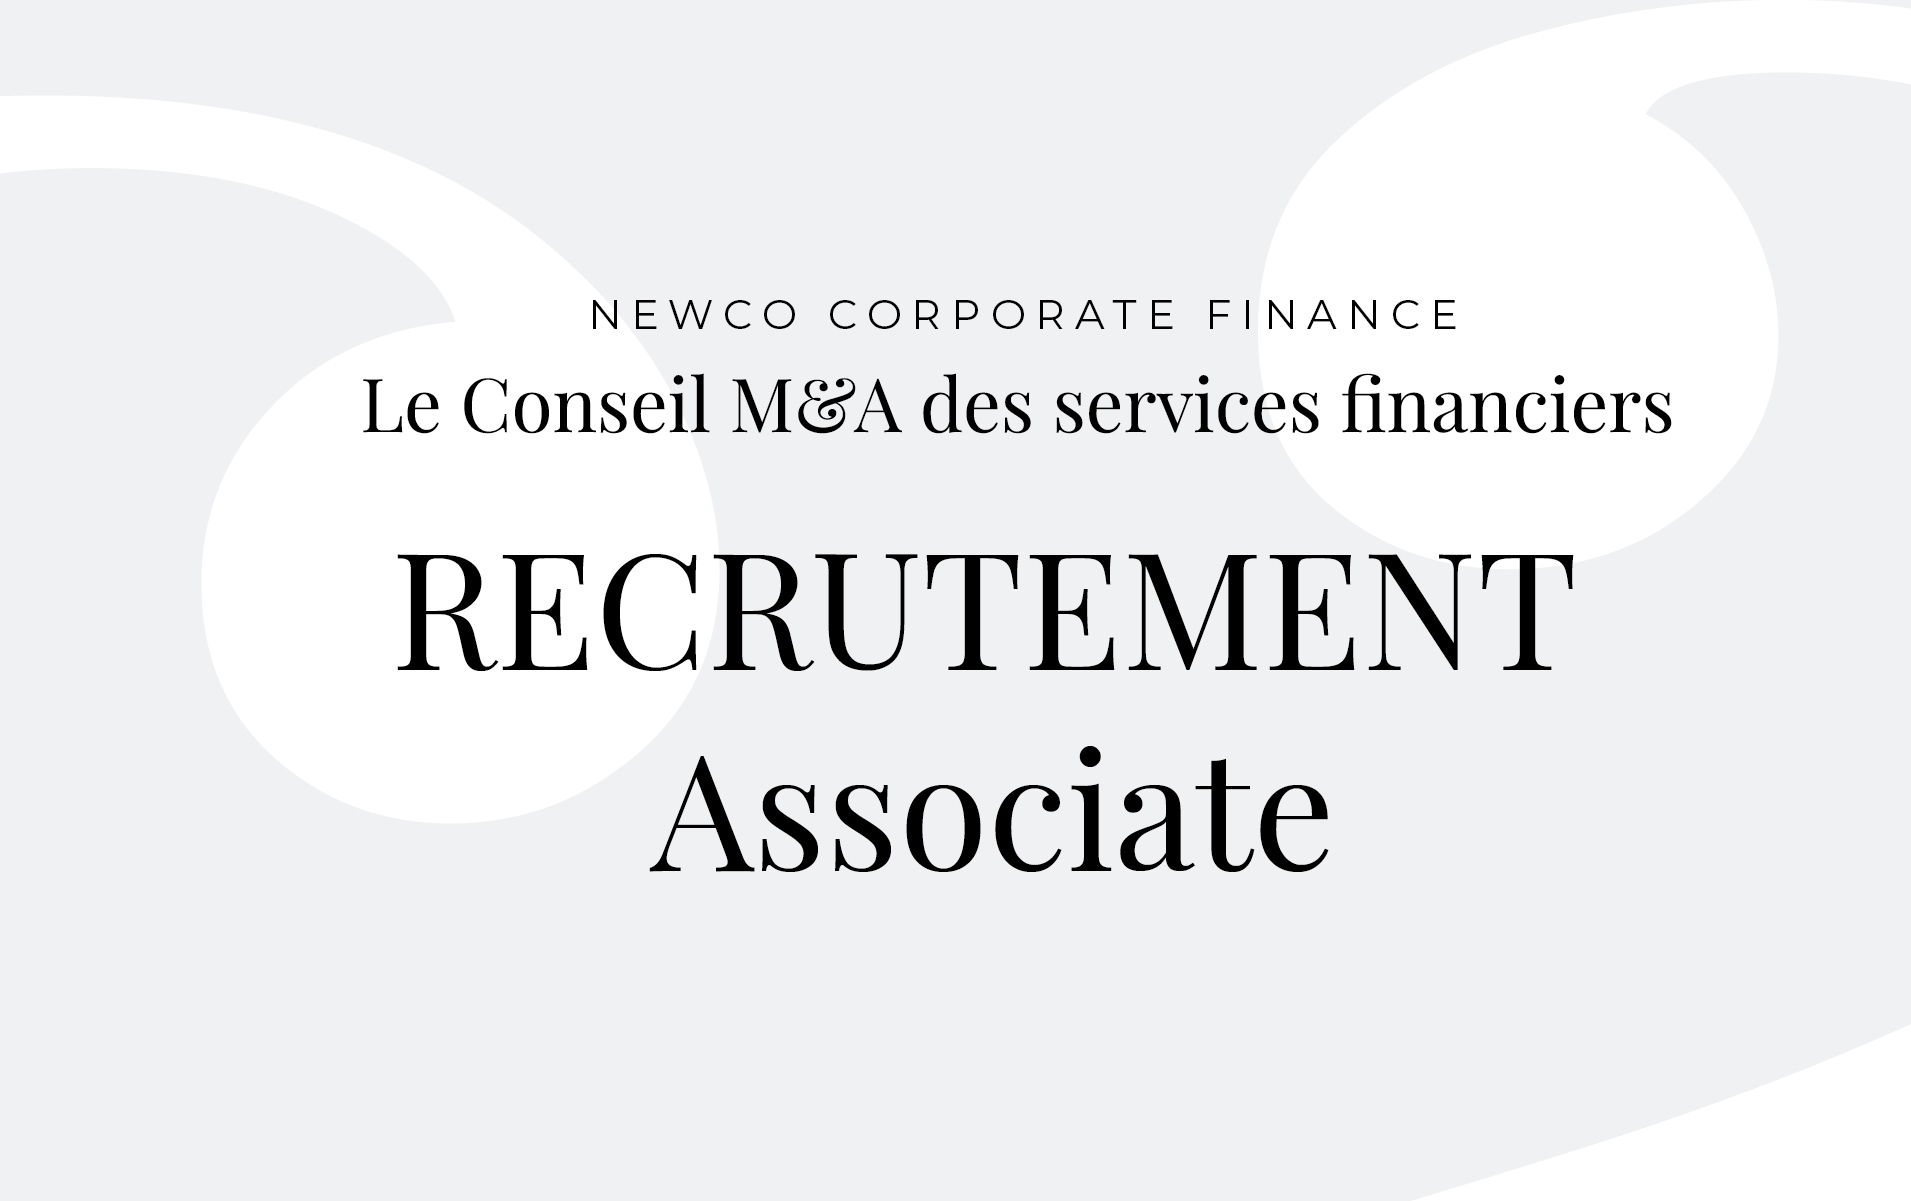 NewCo Corporate Finance s’agrandit et recherche un associate motivé pour rejoindre une équipe dynamique